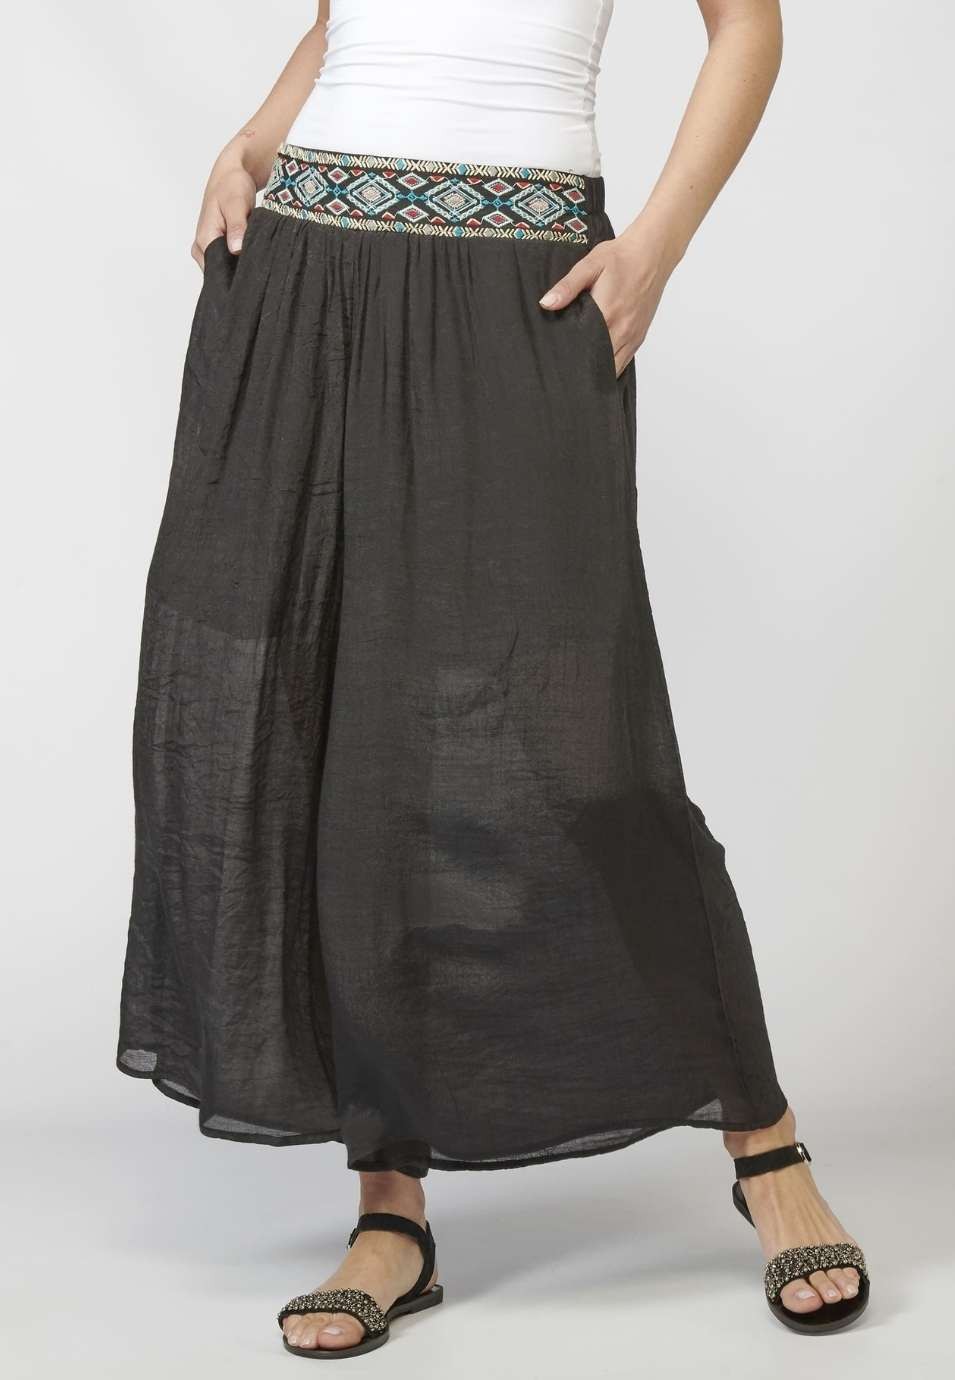 Pantalón de Mujer straigth largo elástico con fajín y Detalle Bordado Étnico color Negro 4